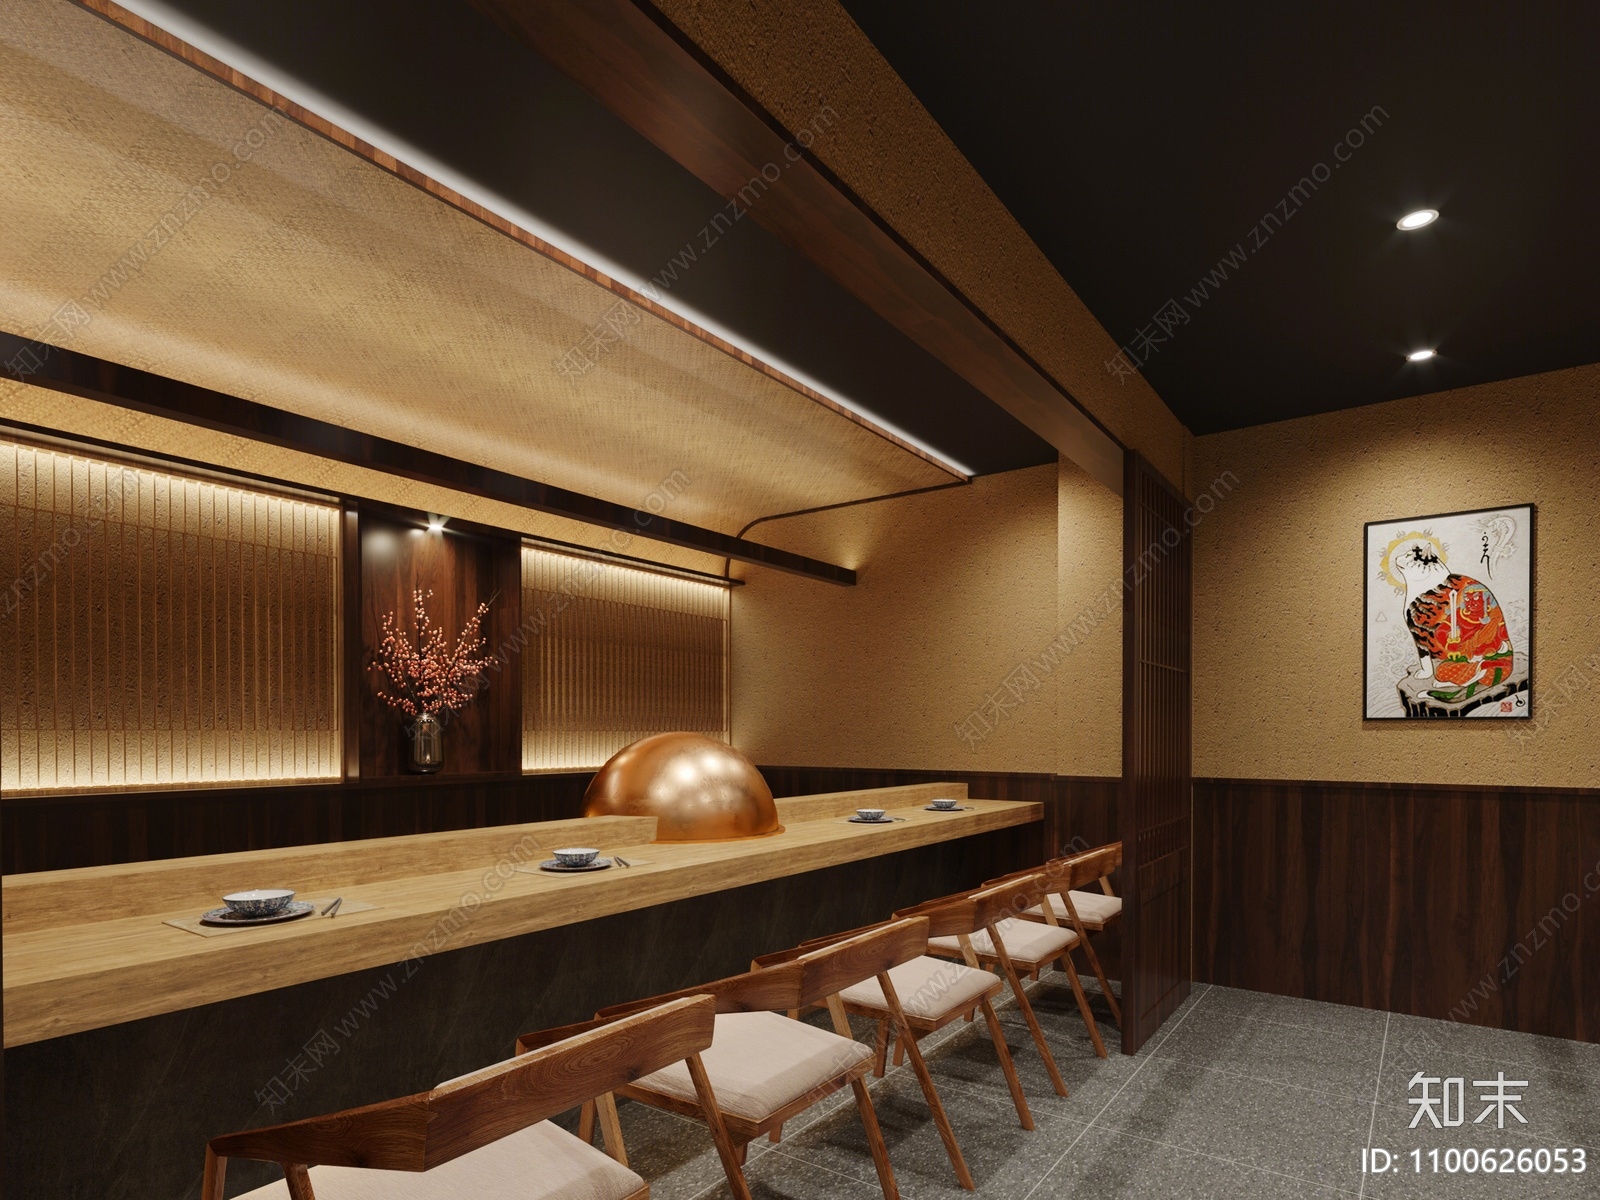 工装空间 餐饮空间 日式餐厅 餐厅餐饮 日韩餐厅 日式日韩餐厅3d模型